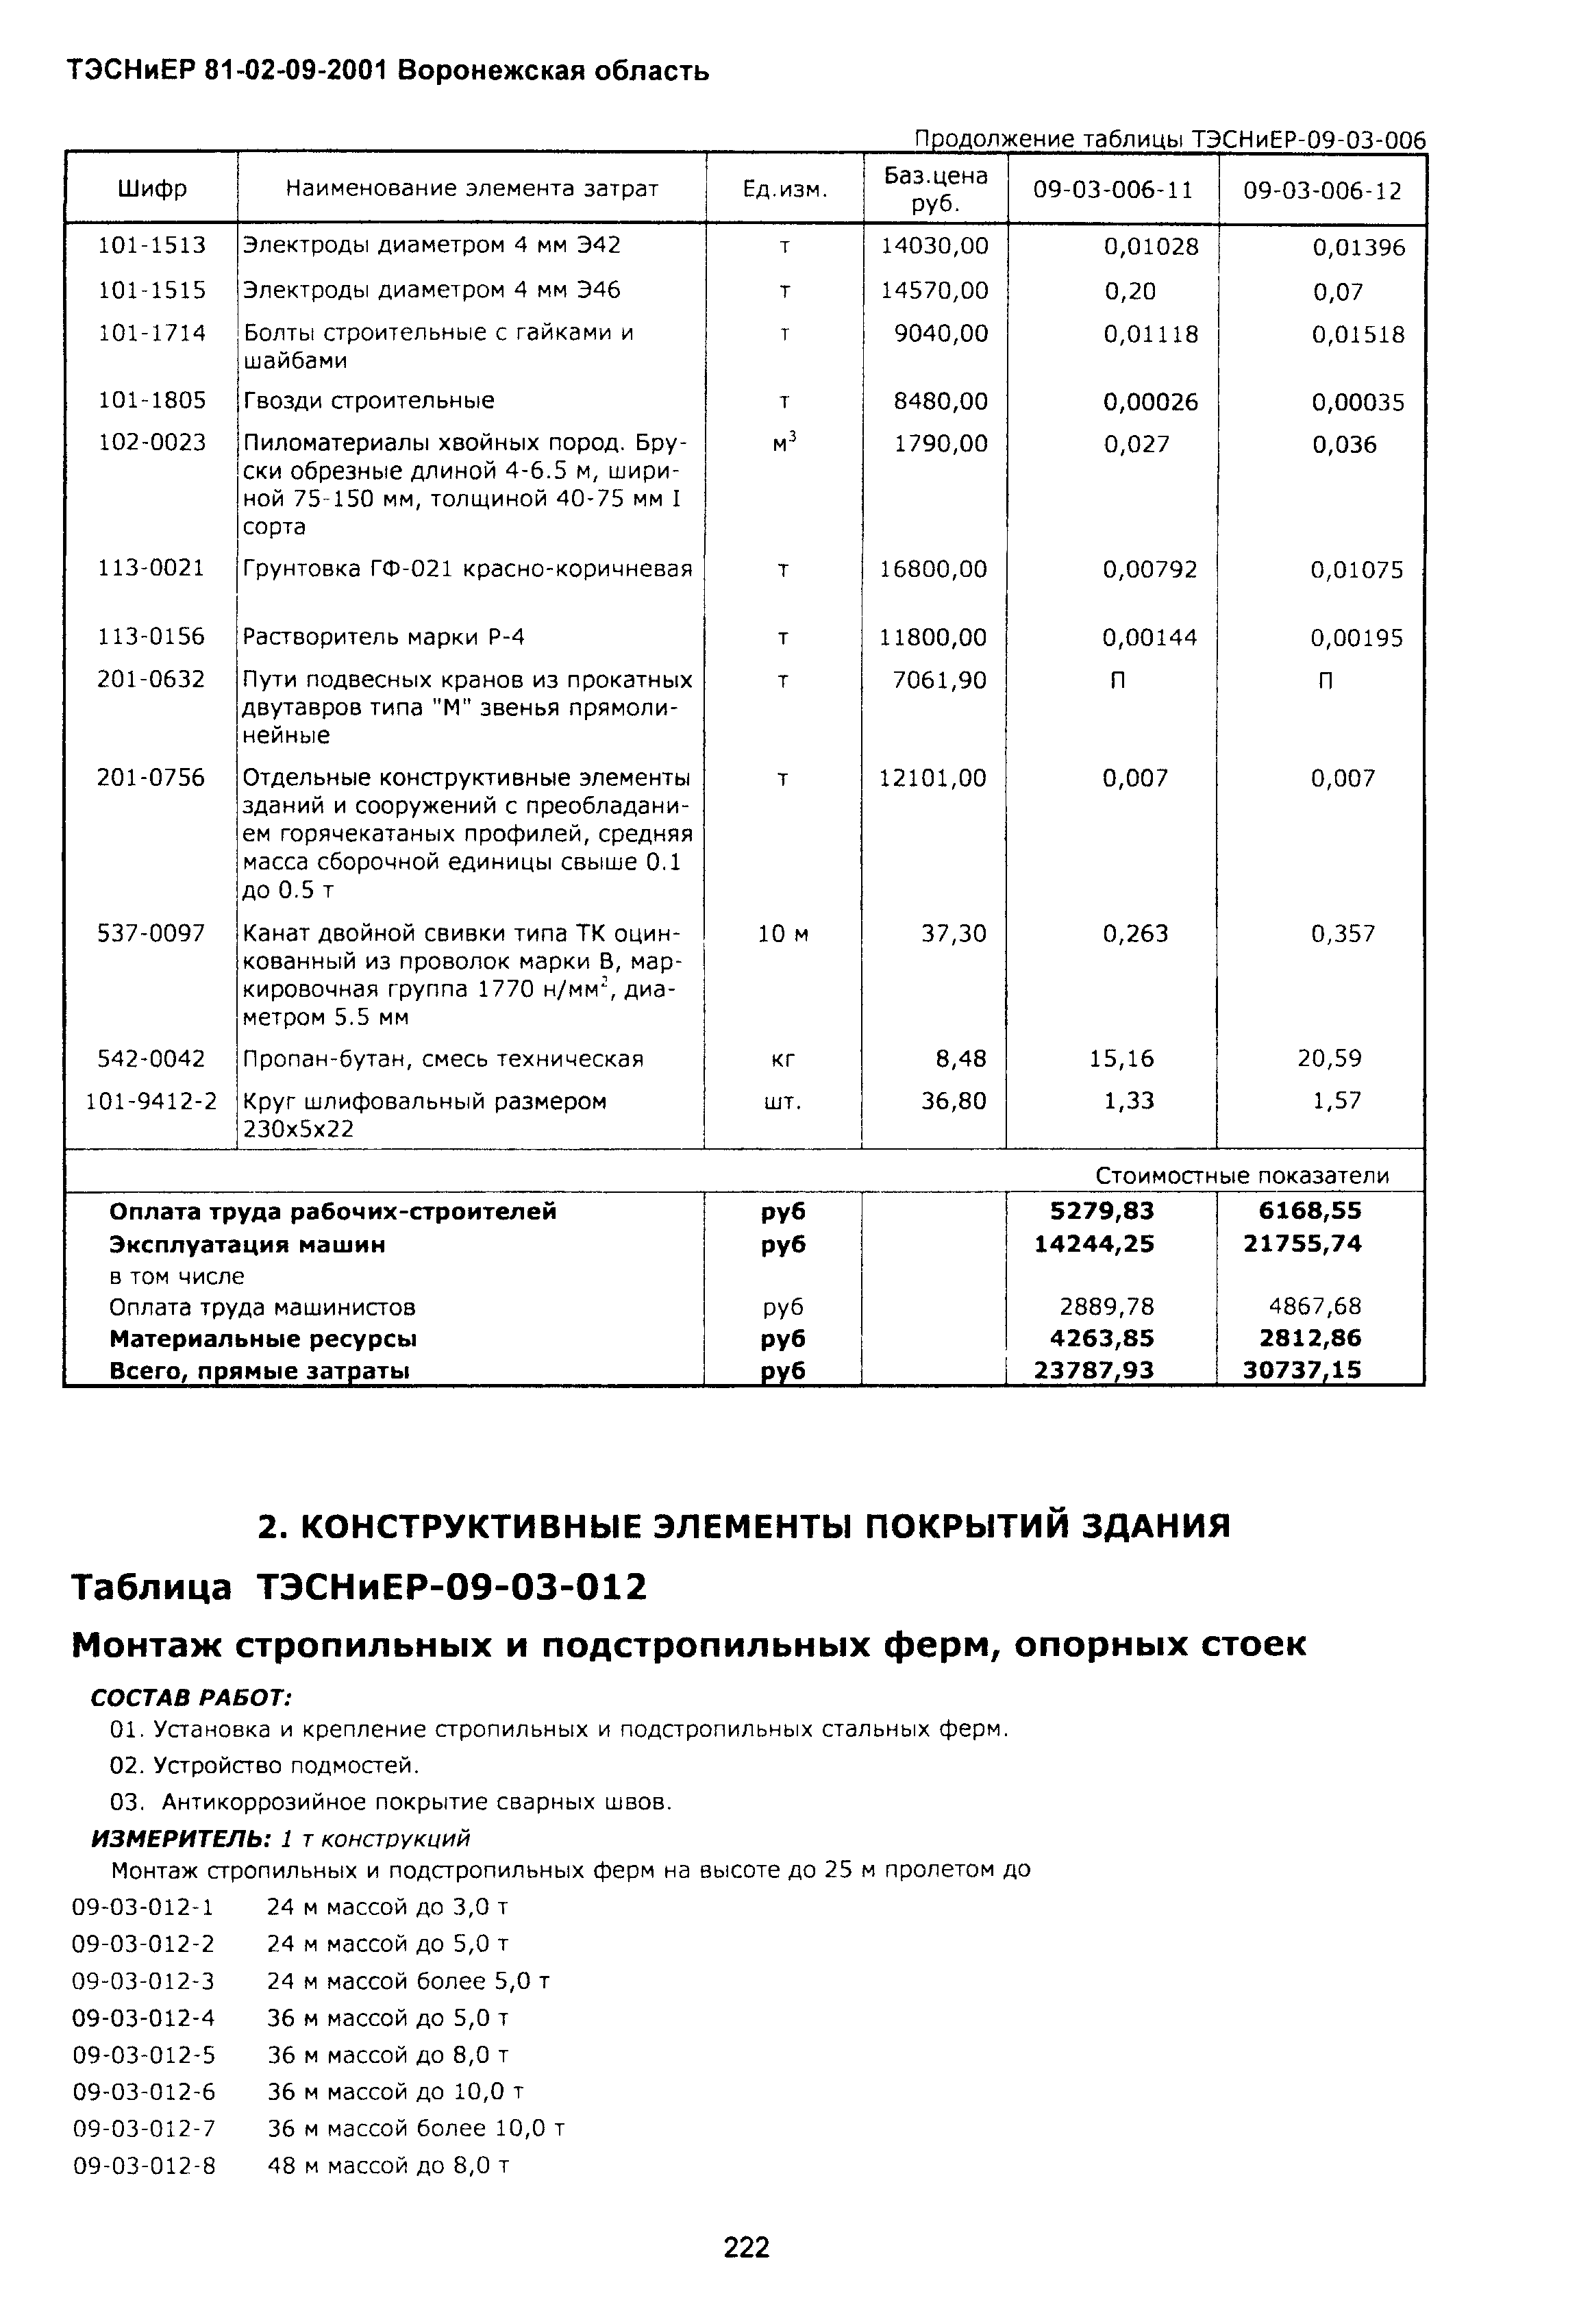 ТЭСНиЕР Воронежской области 81-02-09-2001